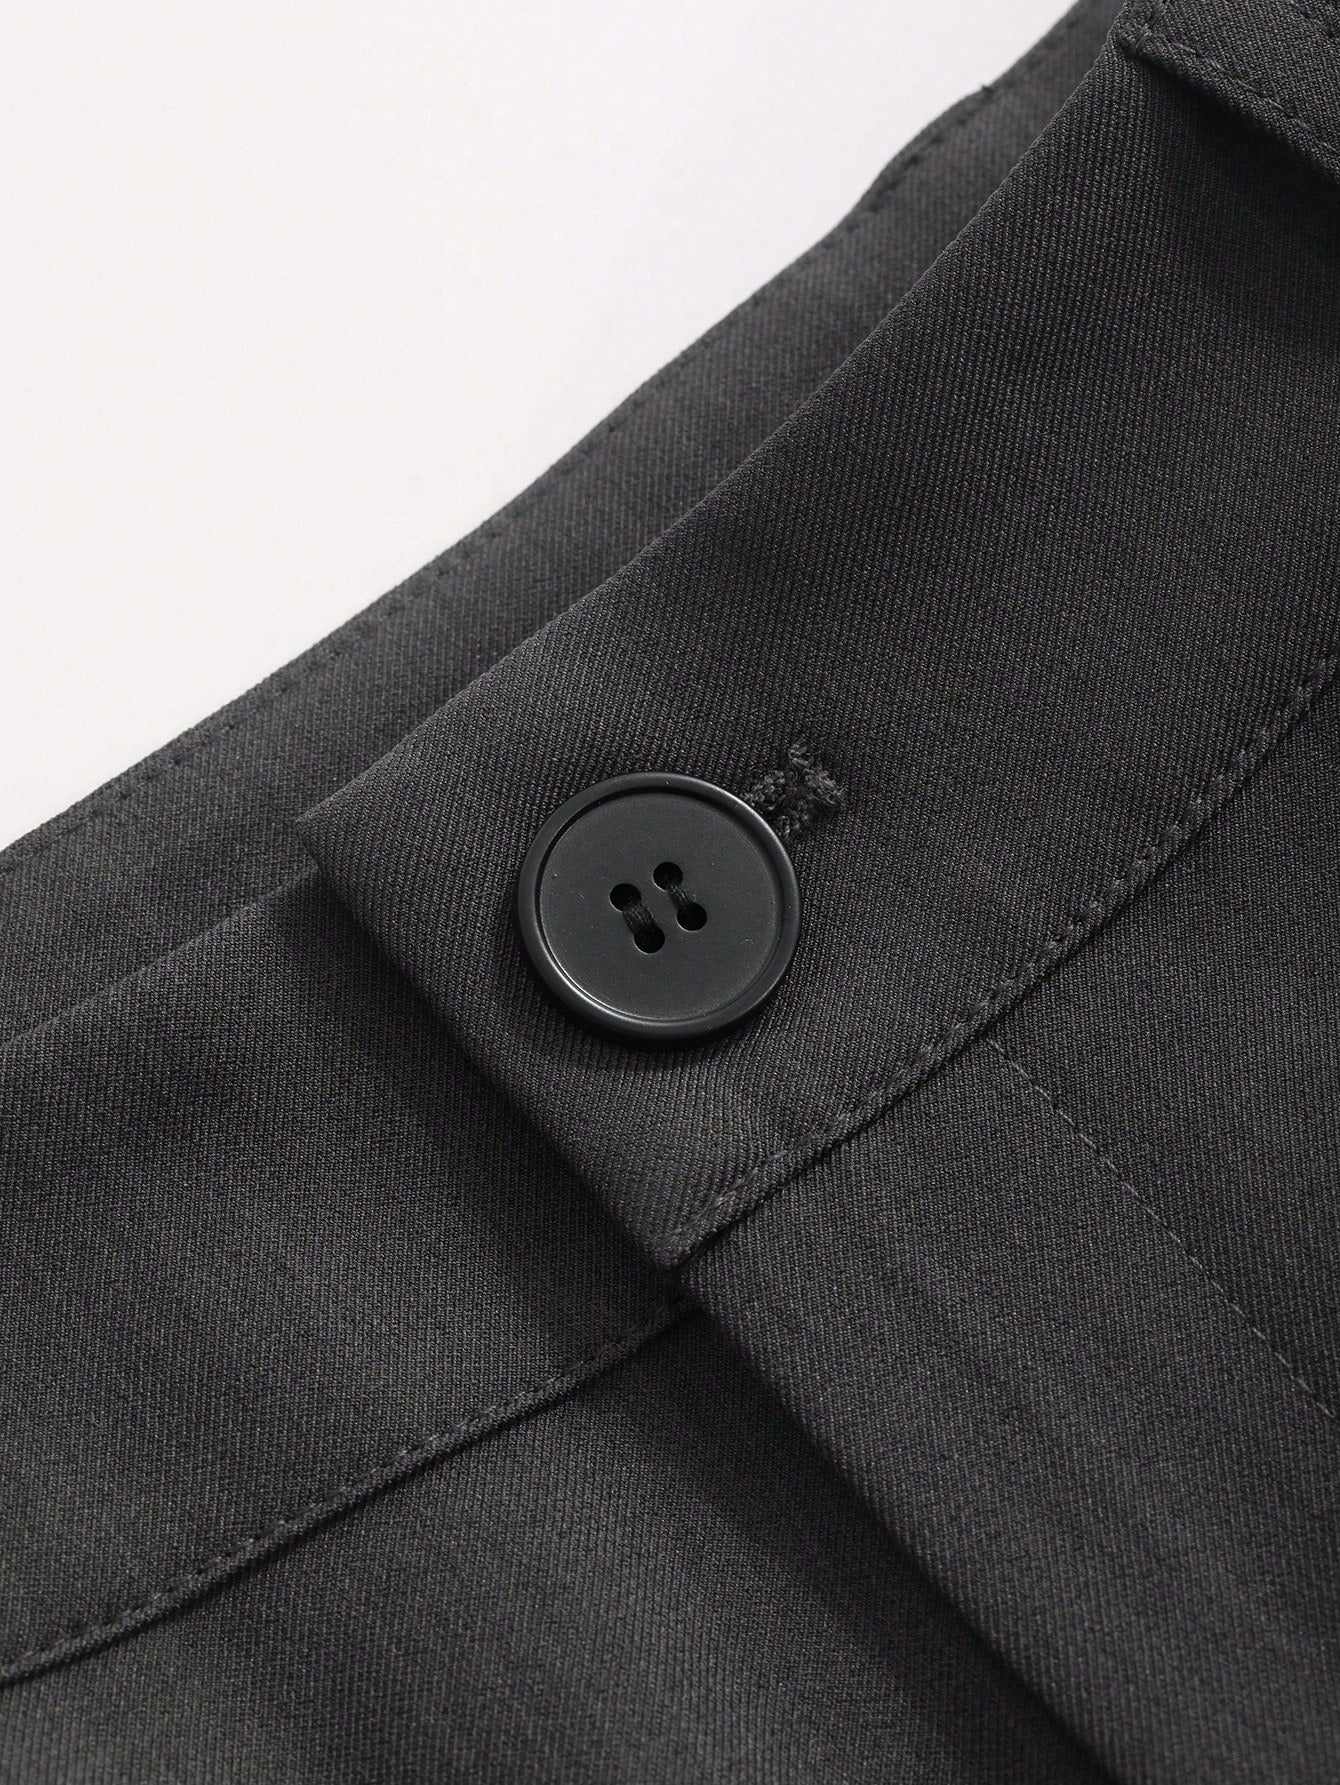 Solid Color Zipper Pocket Pleated Suit Pants